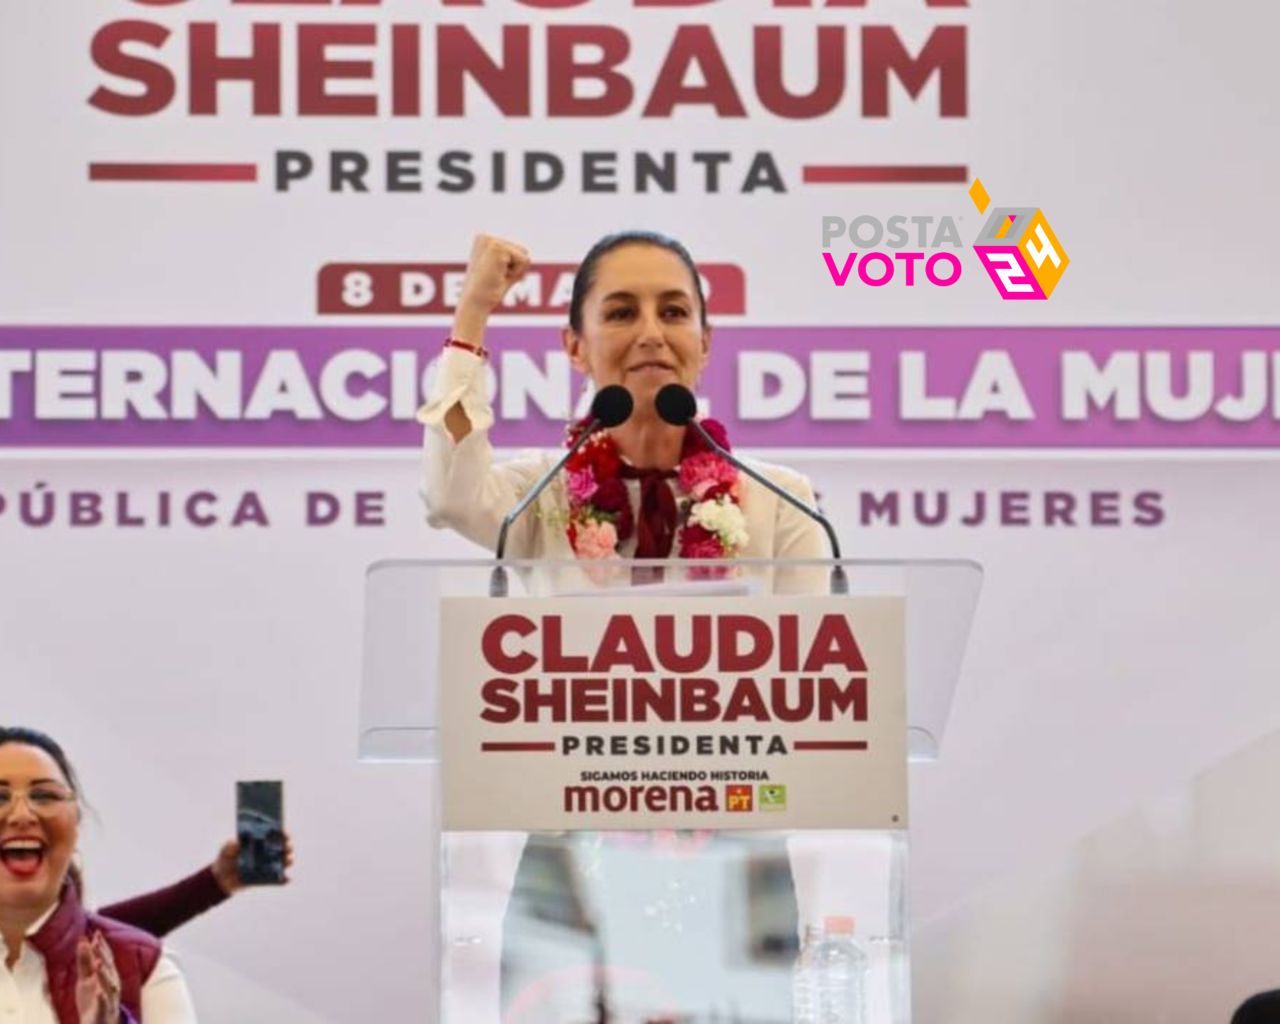 Vendrá Claudia Sheinbaum a Tamaulipas